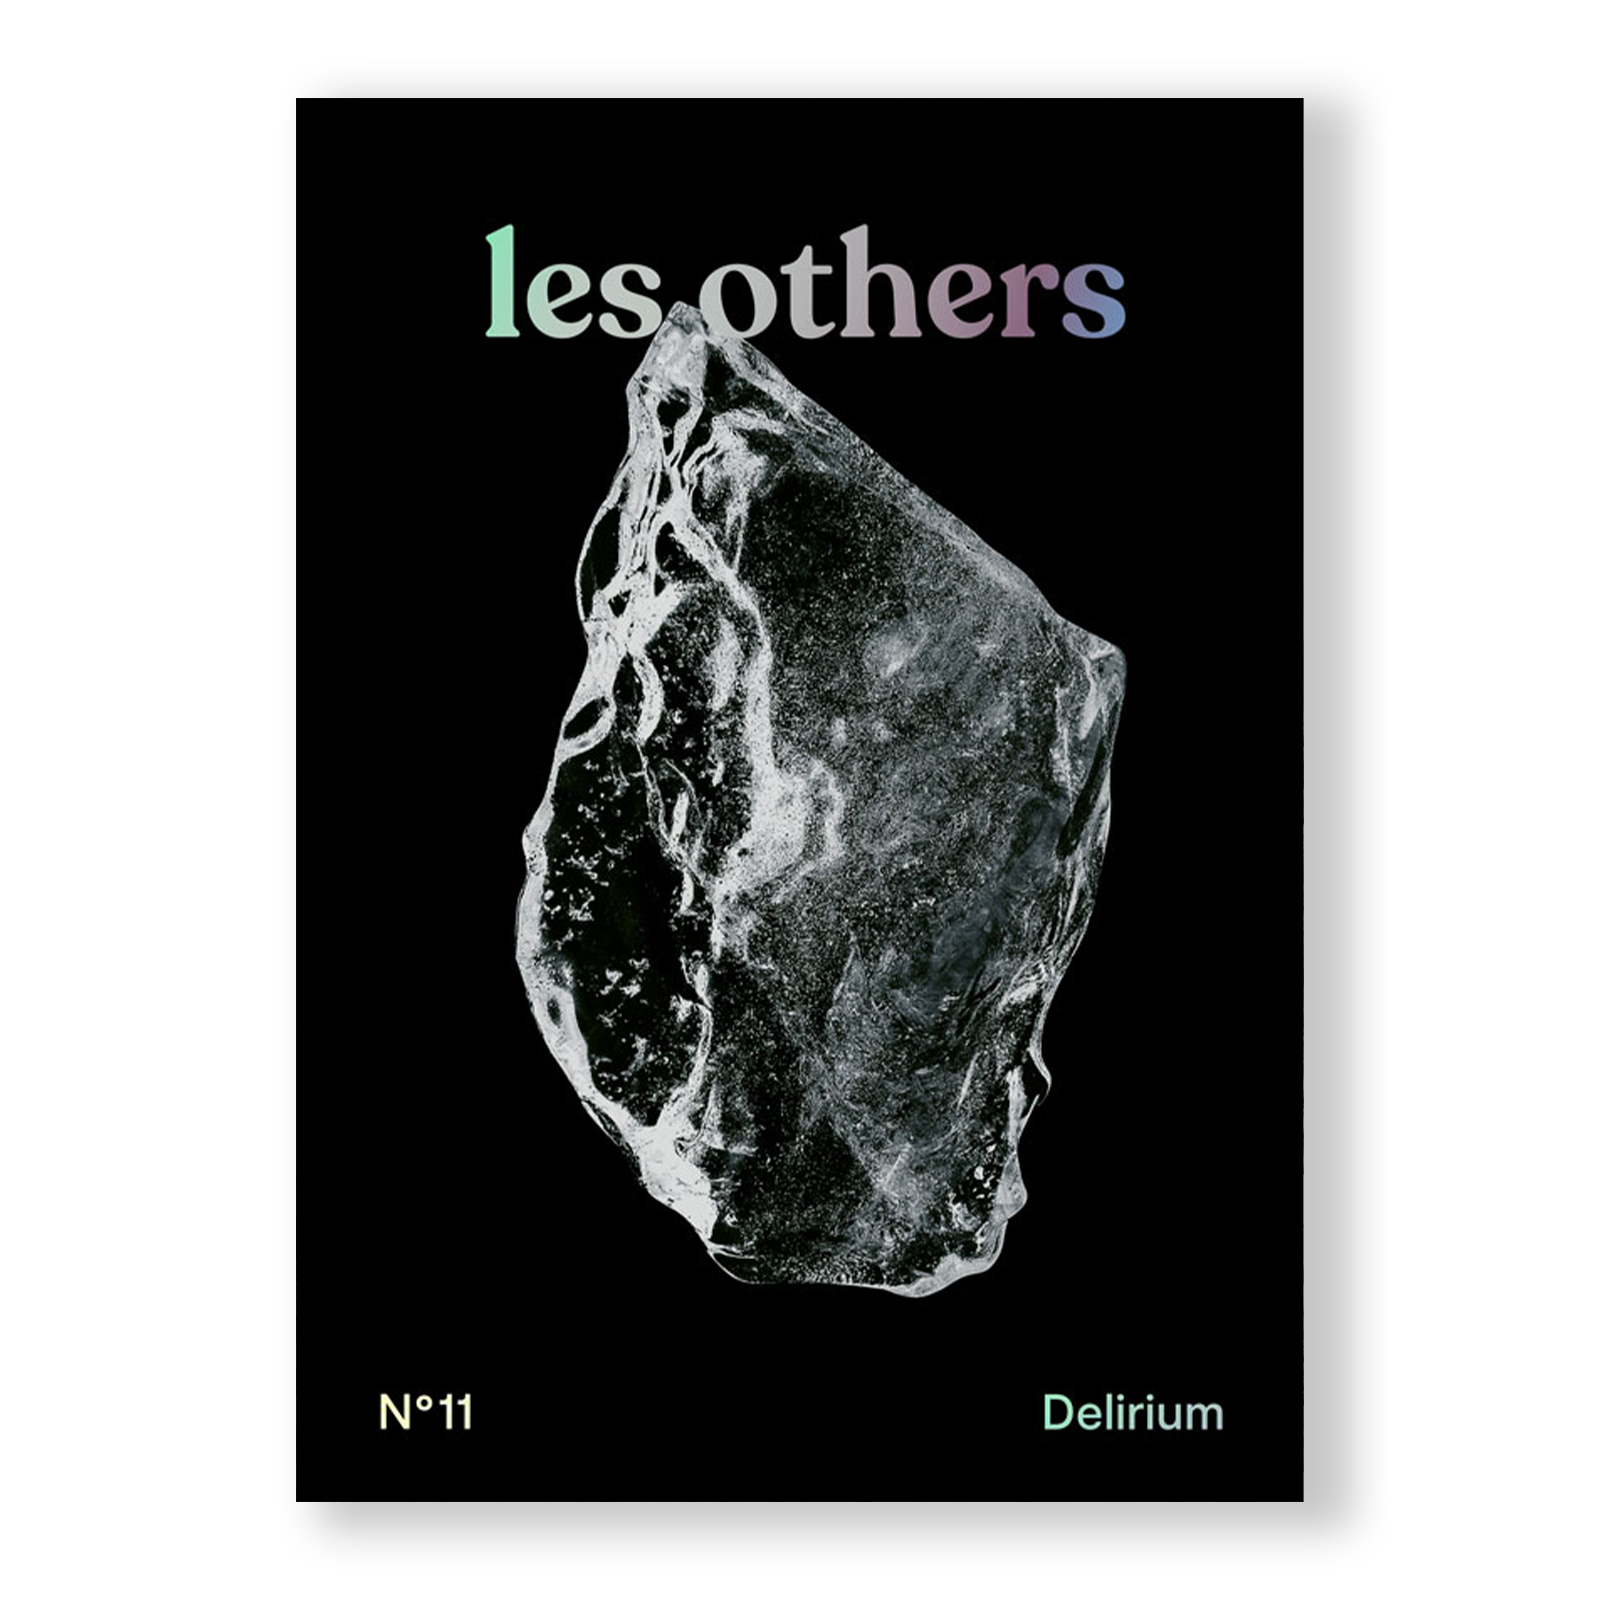 les others - Delirium (volume 11)